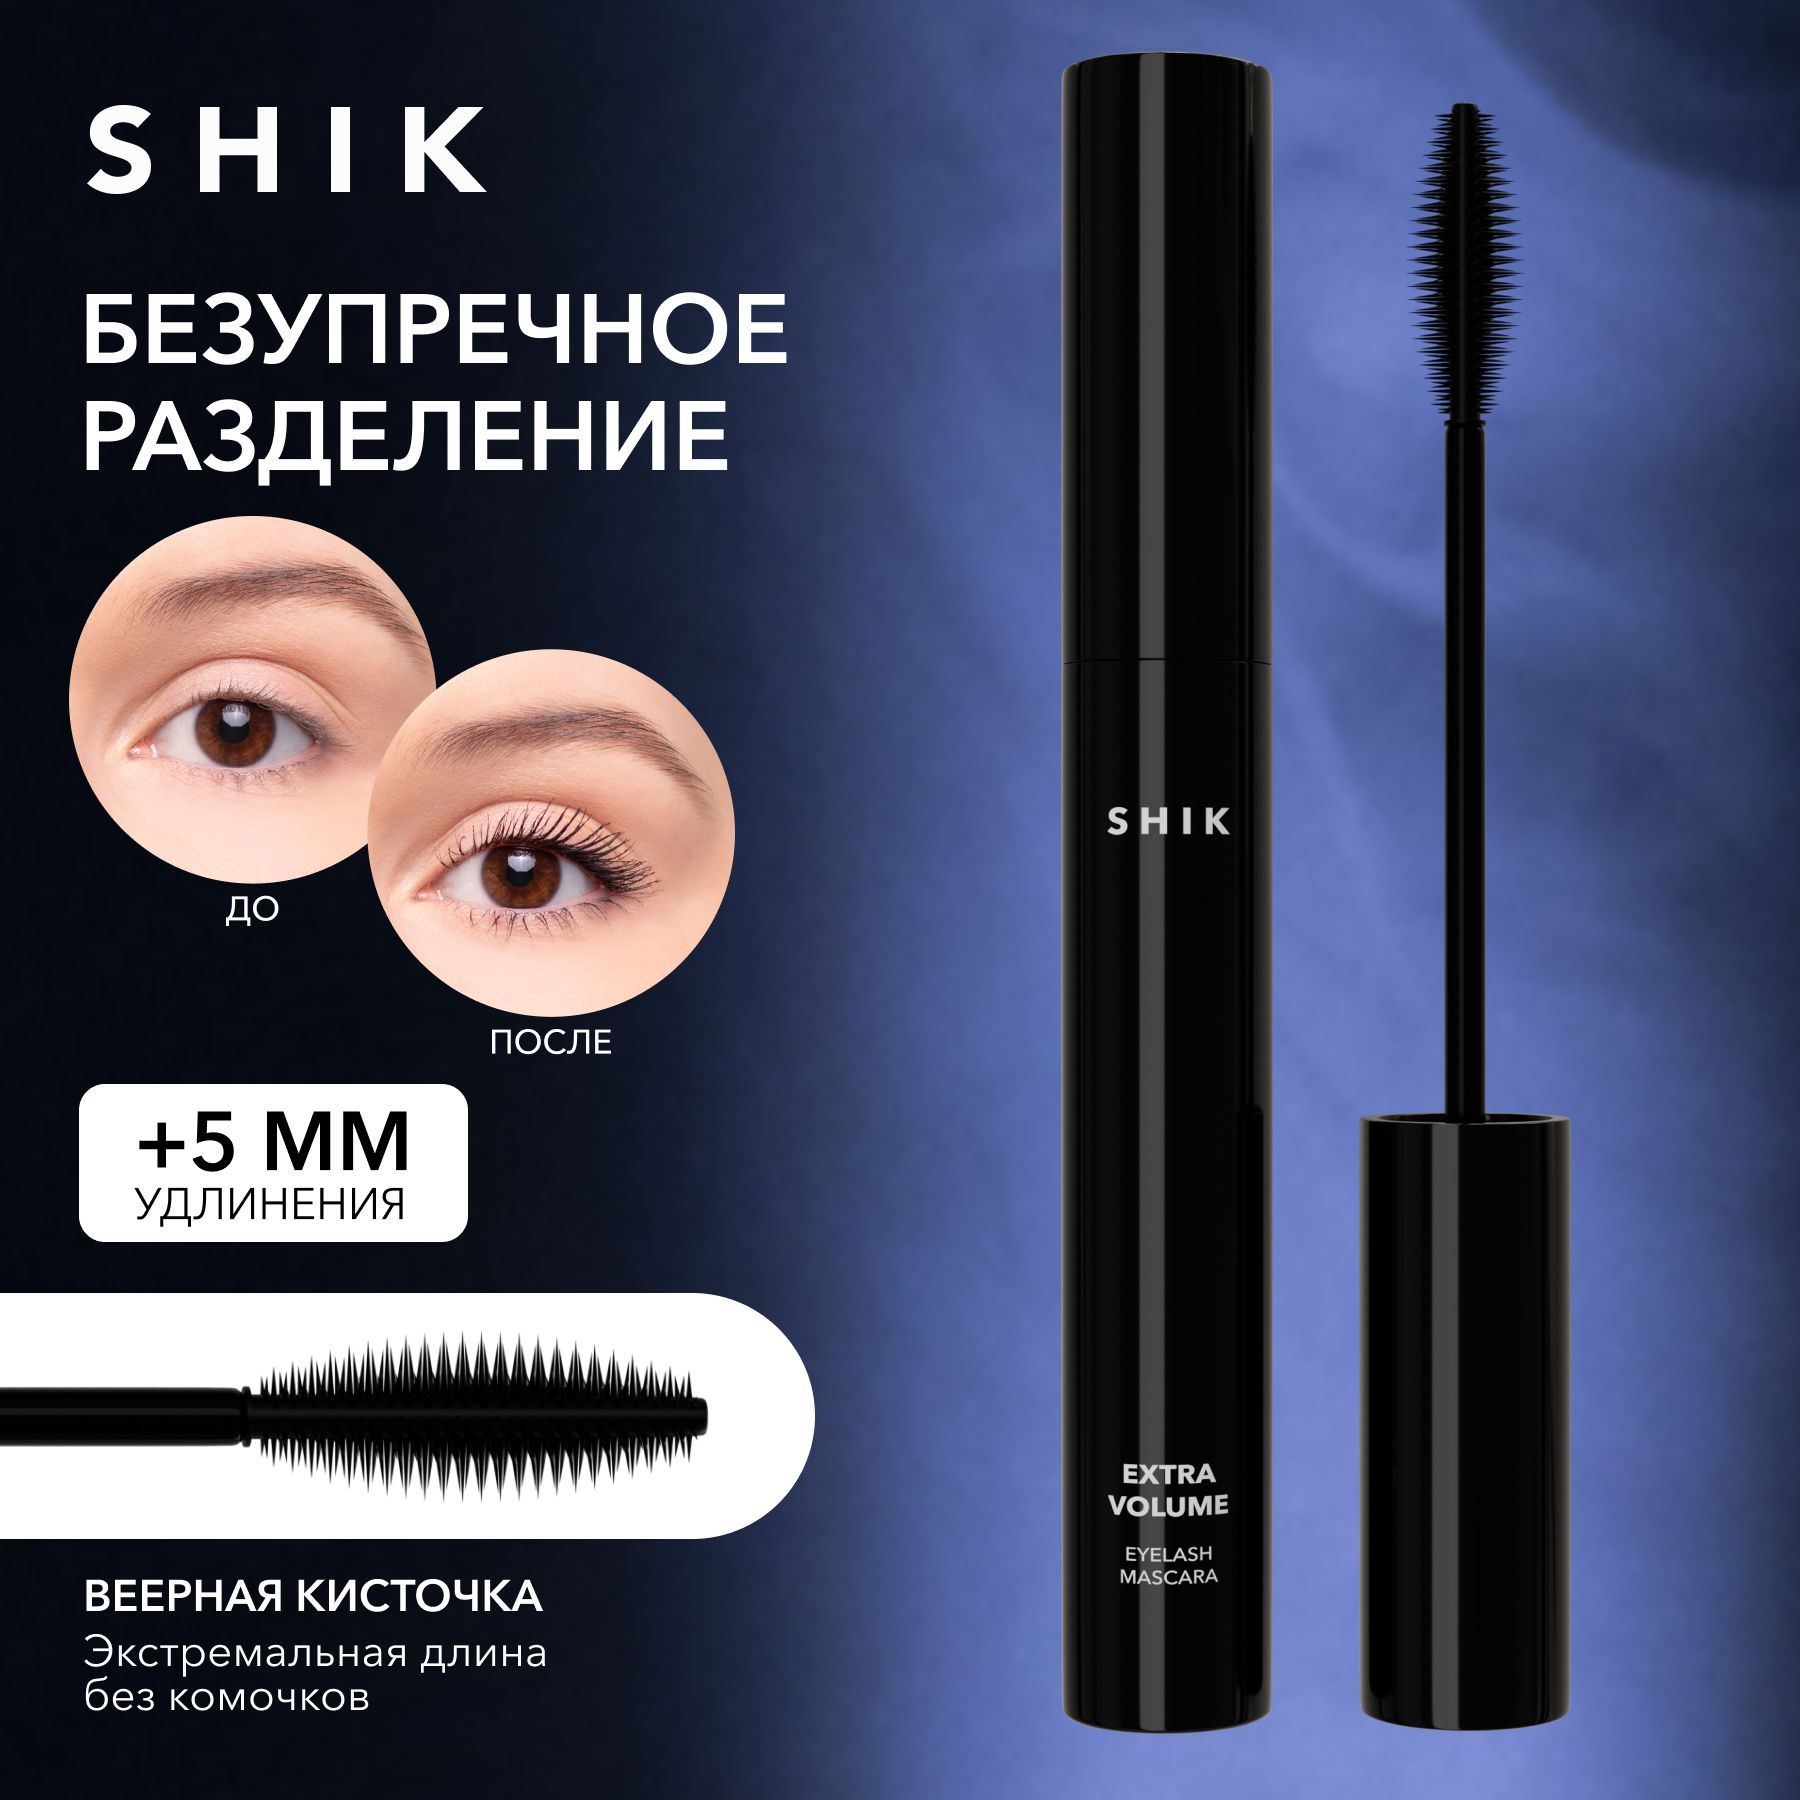 Extra volume eyelash mascara shik